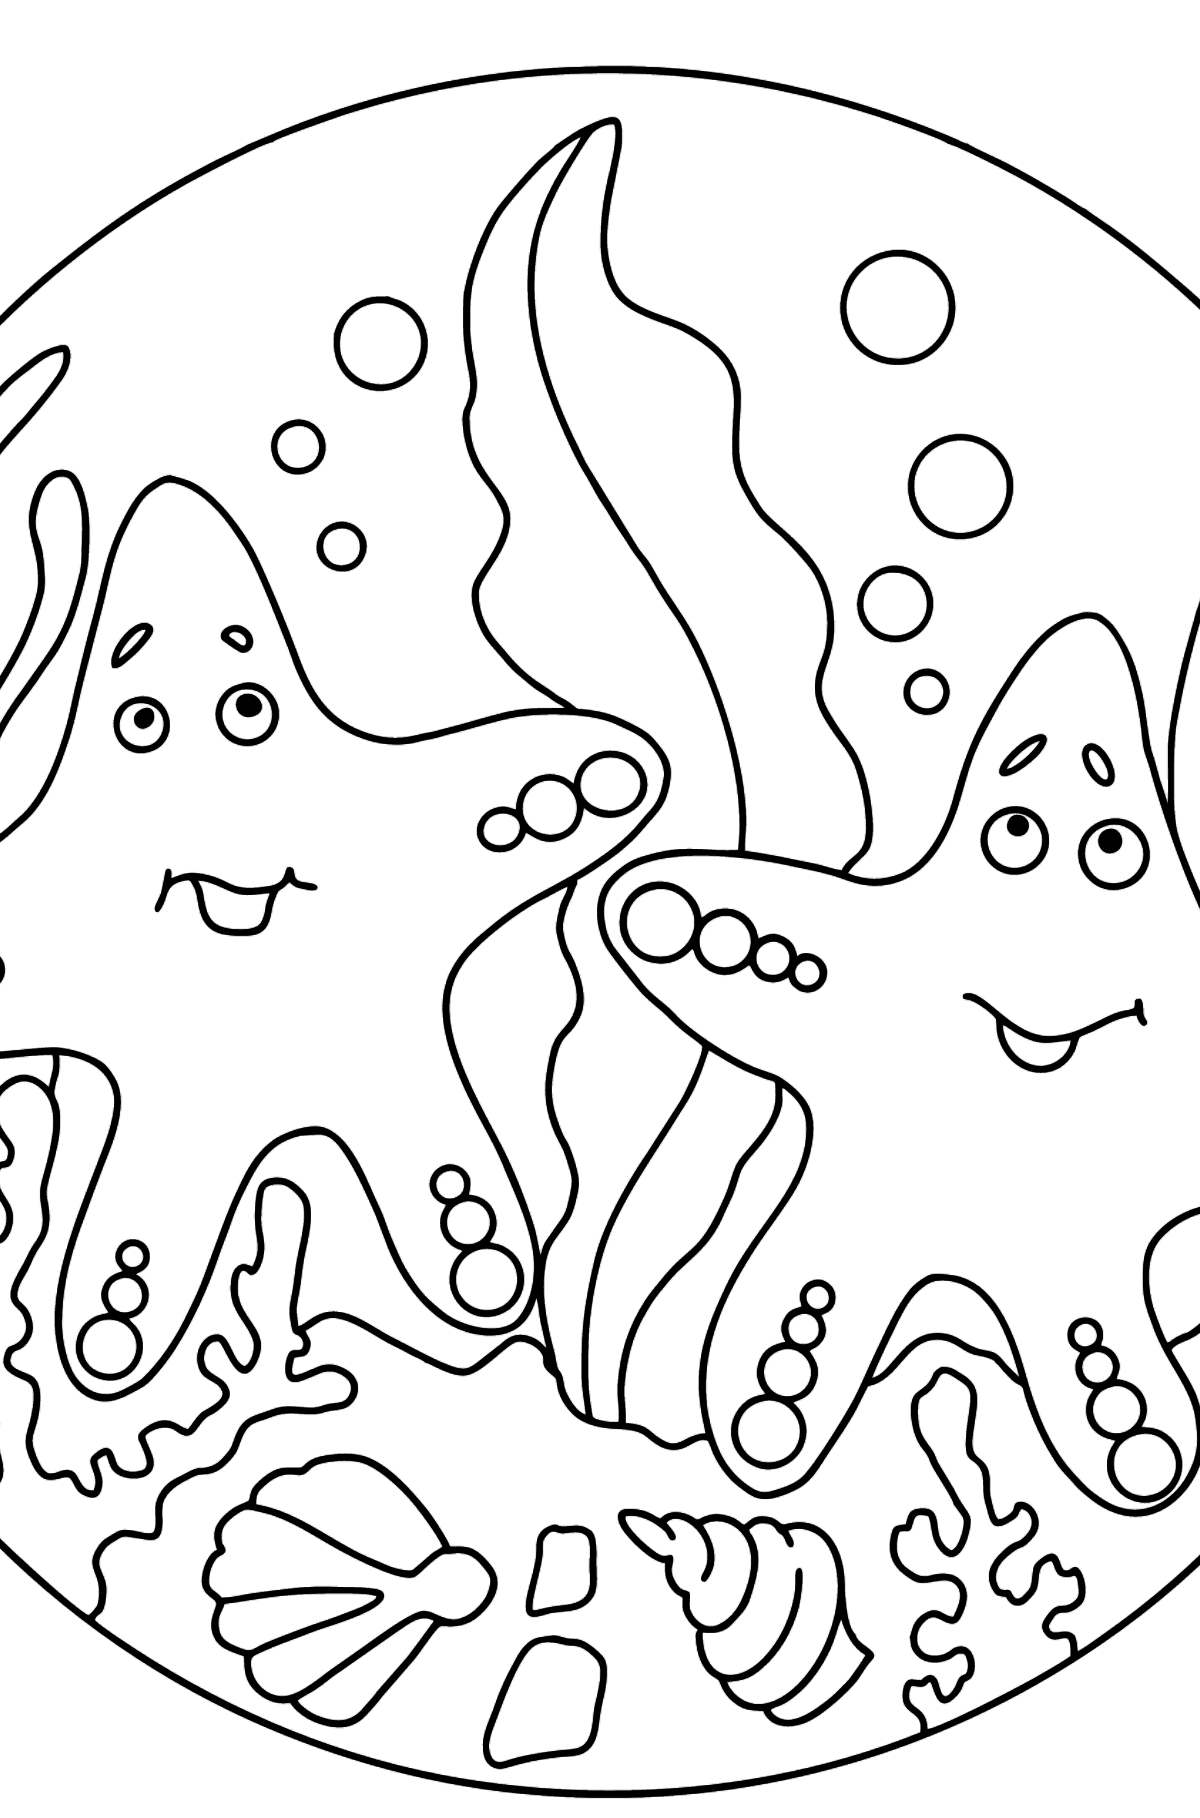 Desenho para colorir Duas estrelas do mar - Imagens para Colorir para Crianças